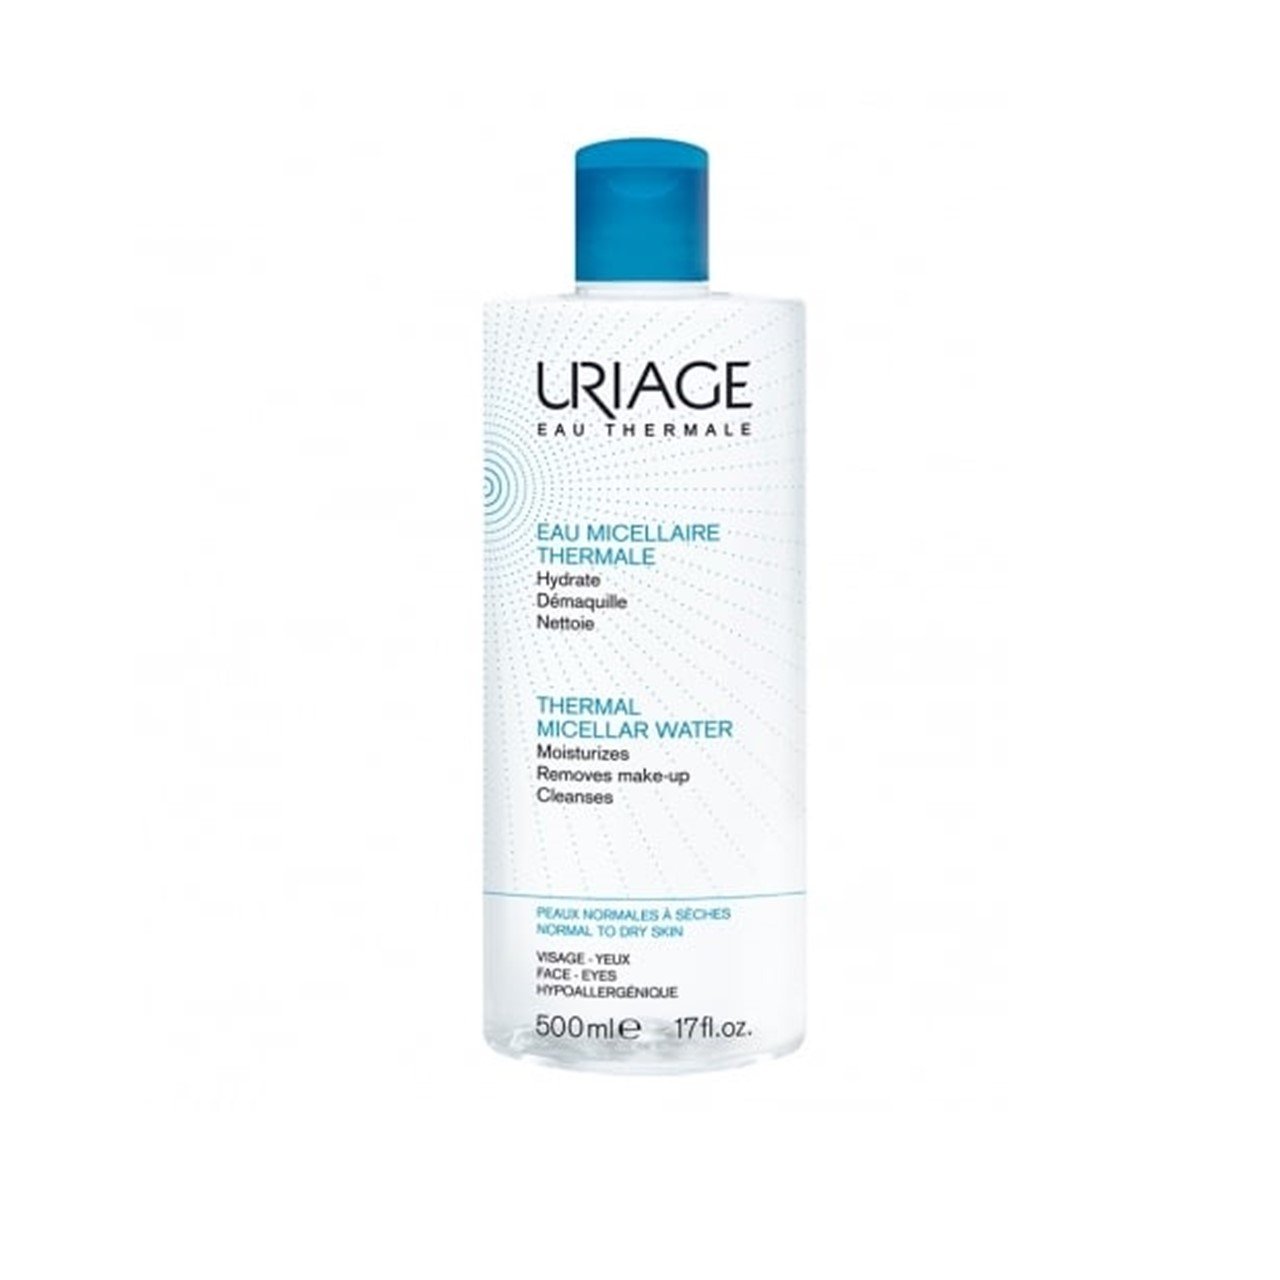 Uriage Thermal Micellar Water Normal Skin 500ml (16.91fl oz)